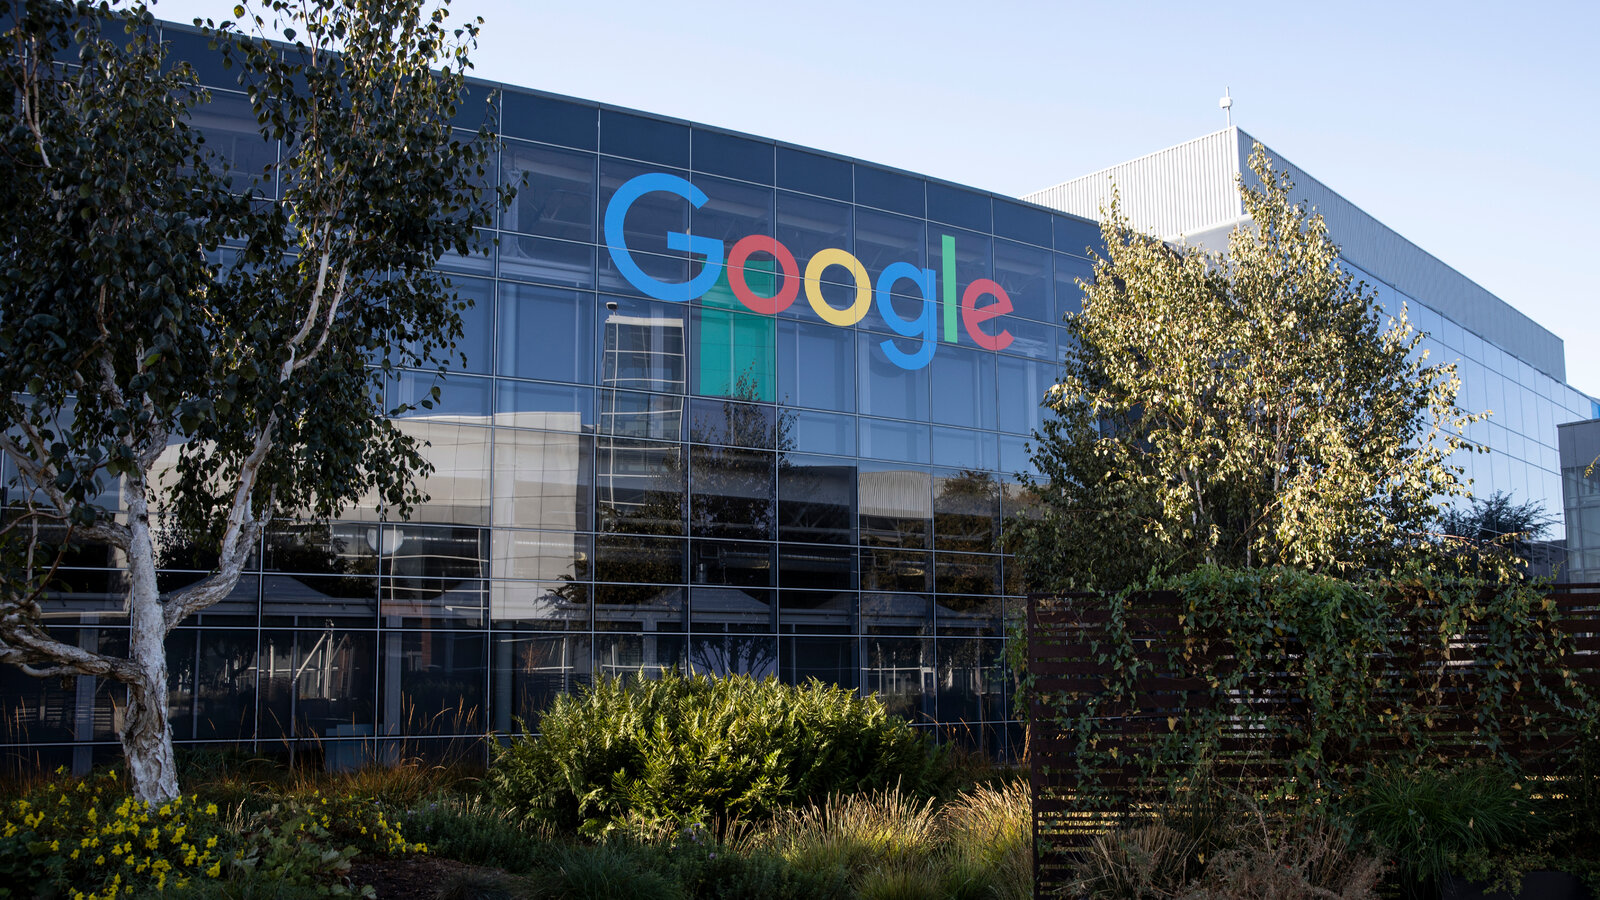 Google a accidentellement transféré un quart de million de dollars à un pirate informatique